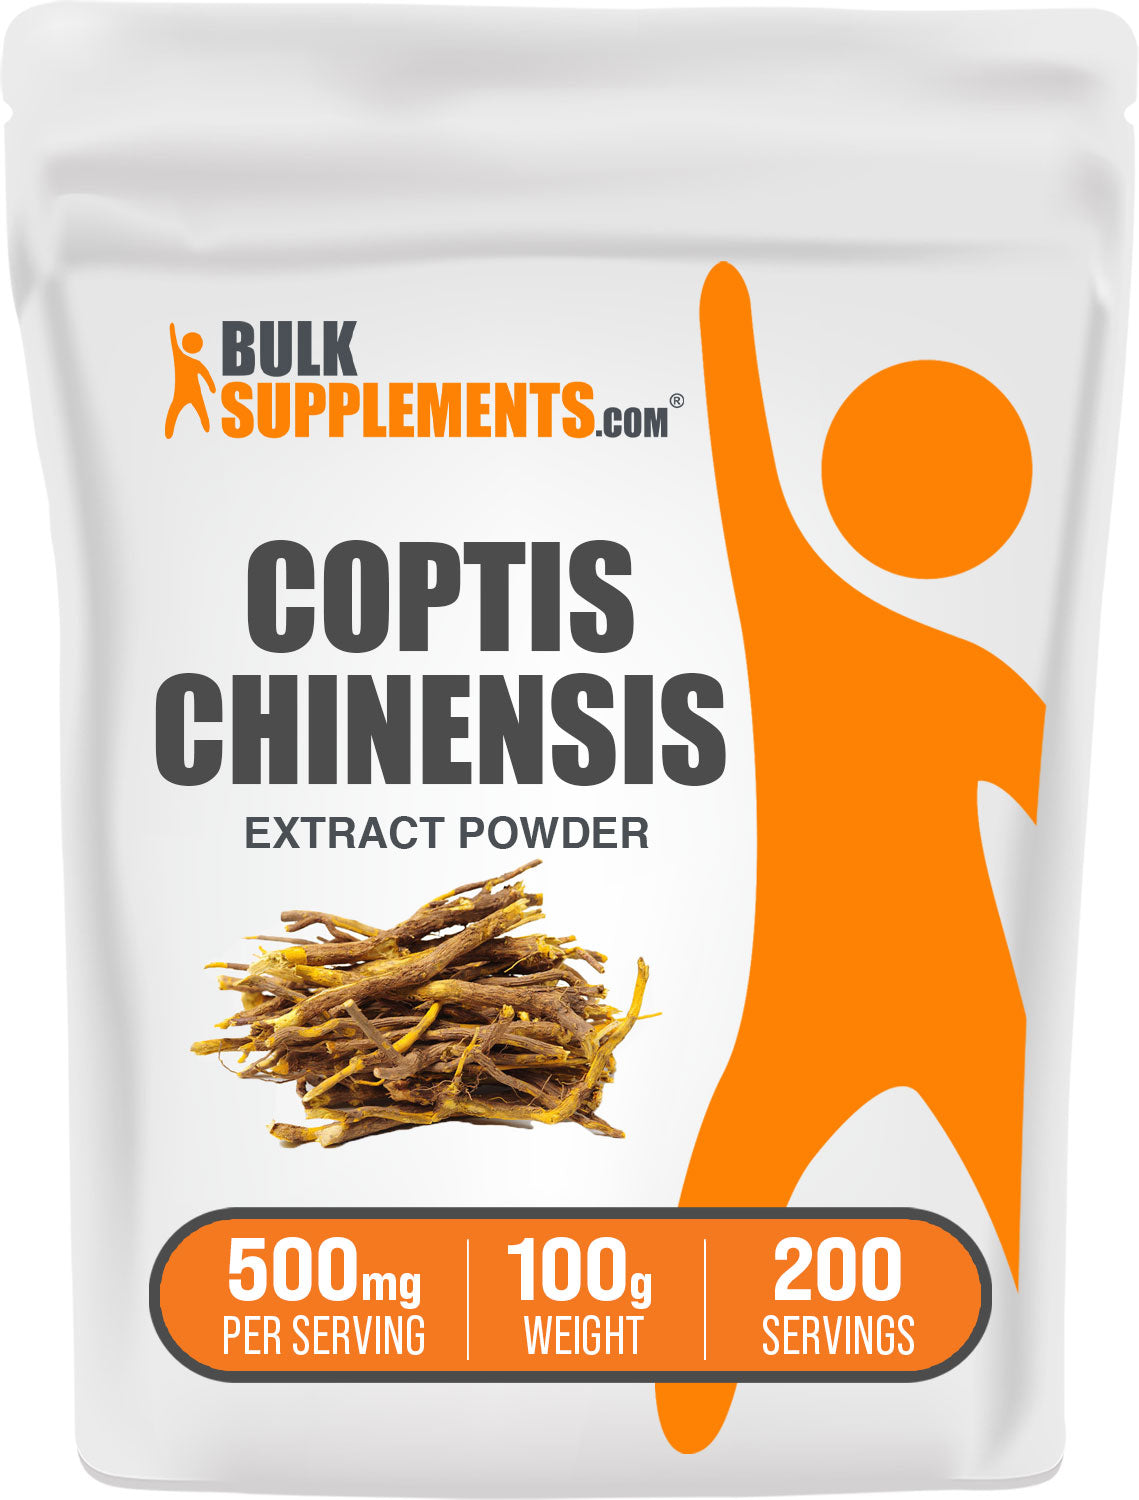 100g of coptis chinensis